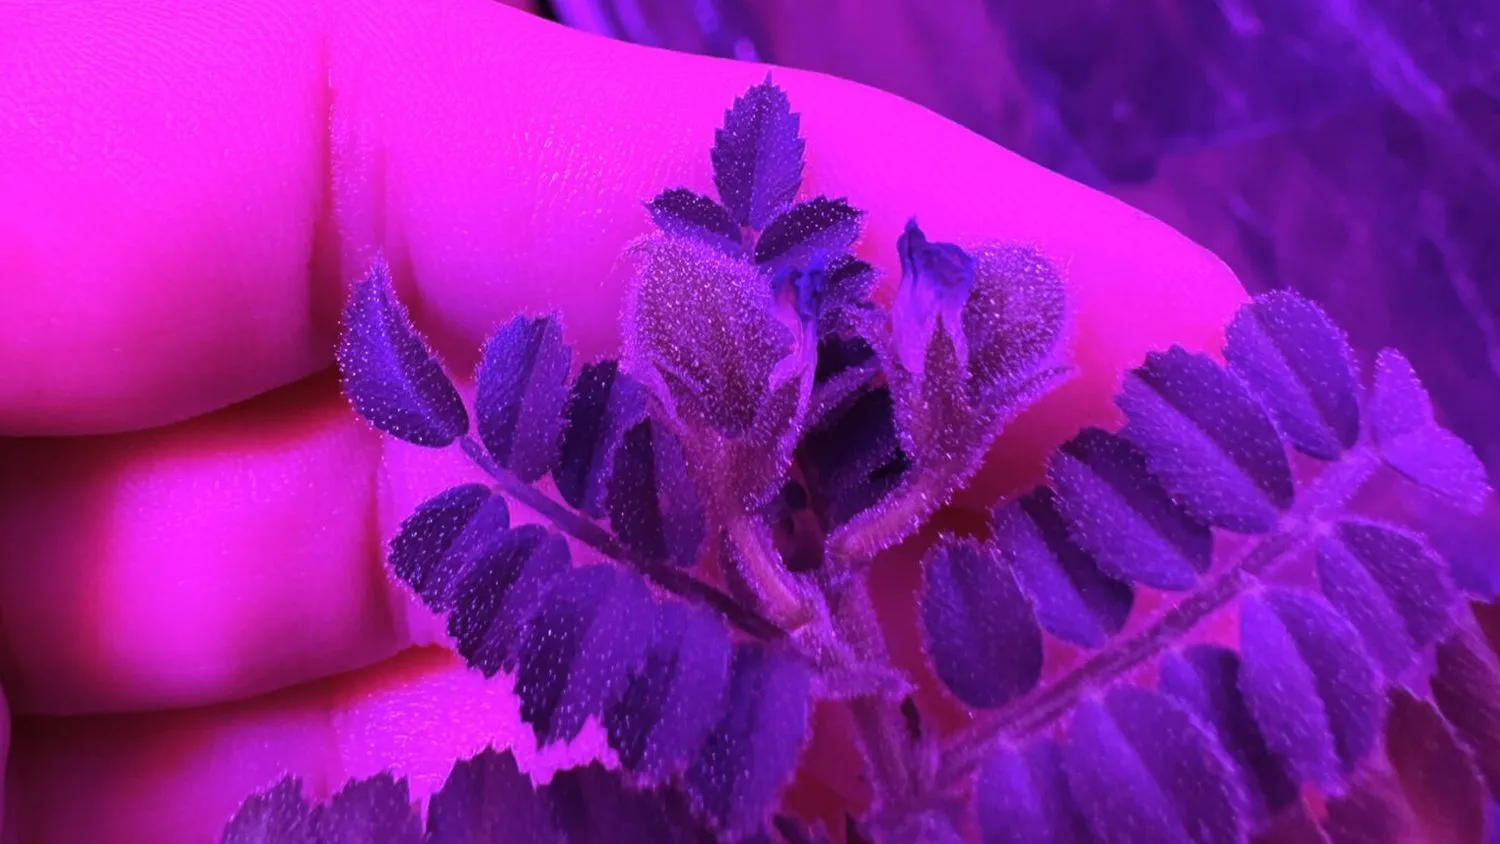 ein violett gefärbtes Licht färbt alles rosa. Die Finger einer Hand sind aus der Nähe zu sehen, wie sie kleine Blätter eines Pflanzenwachstums umarmen.